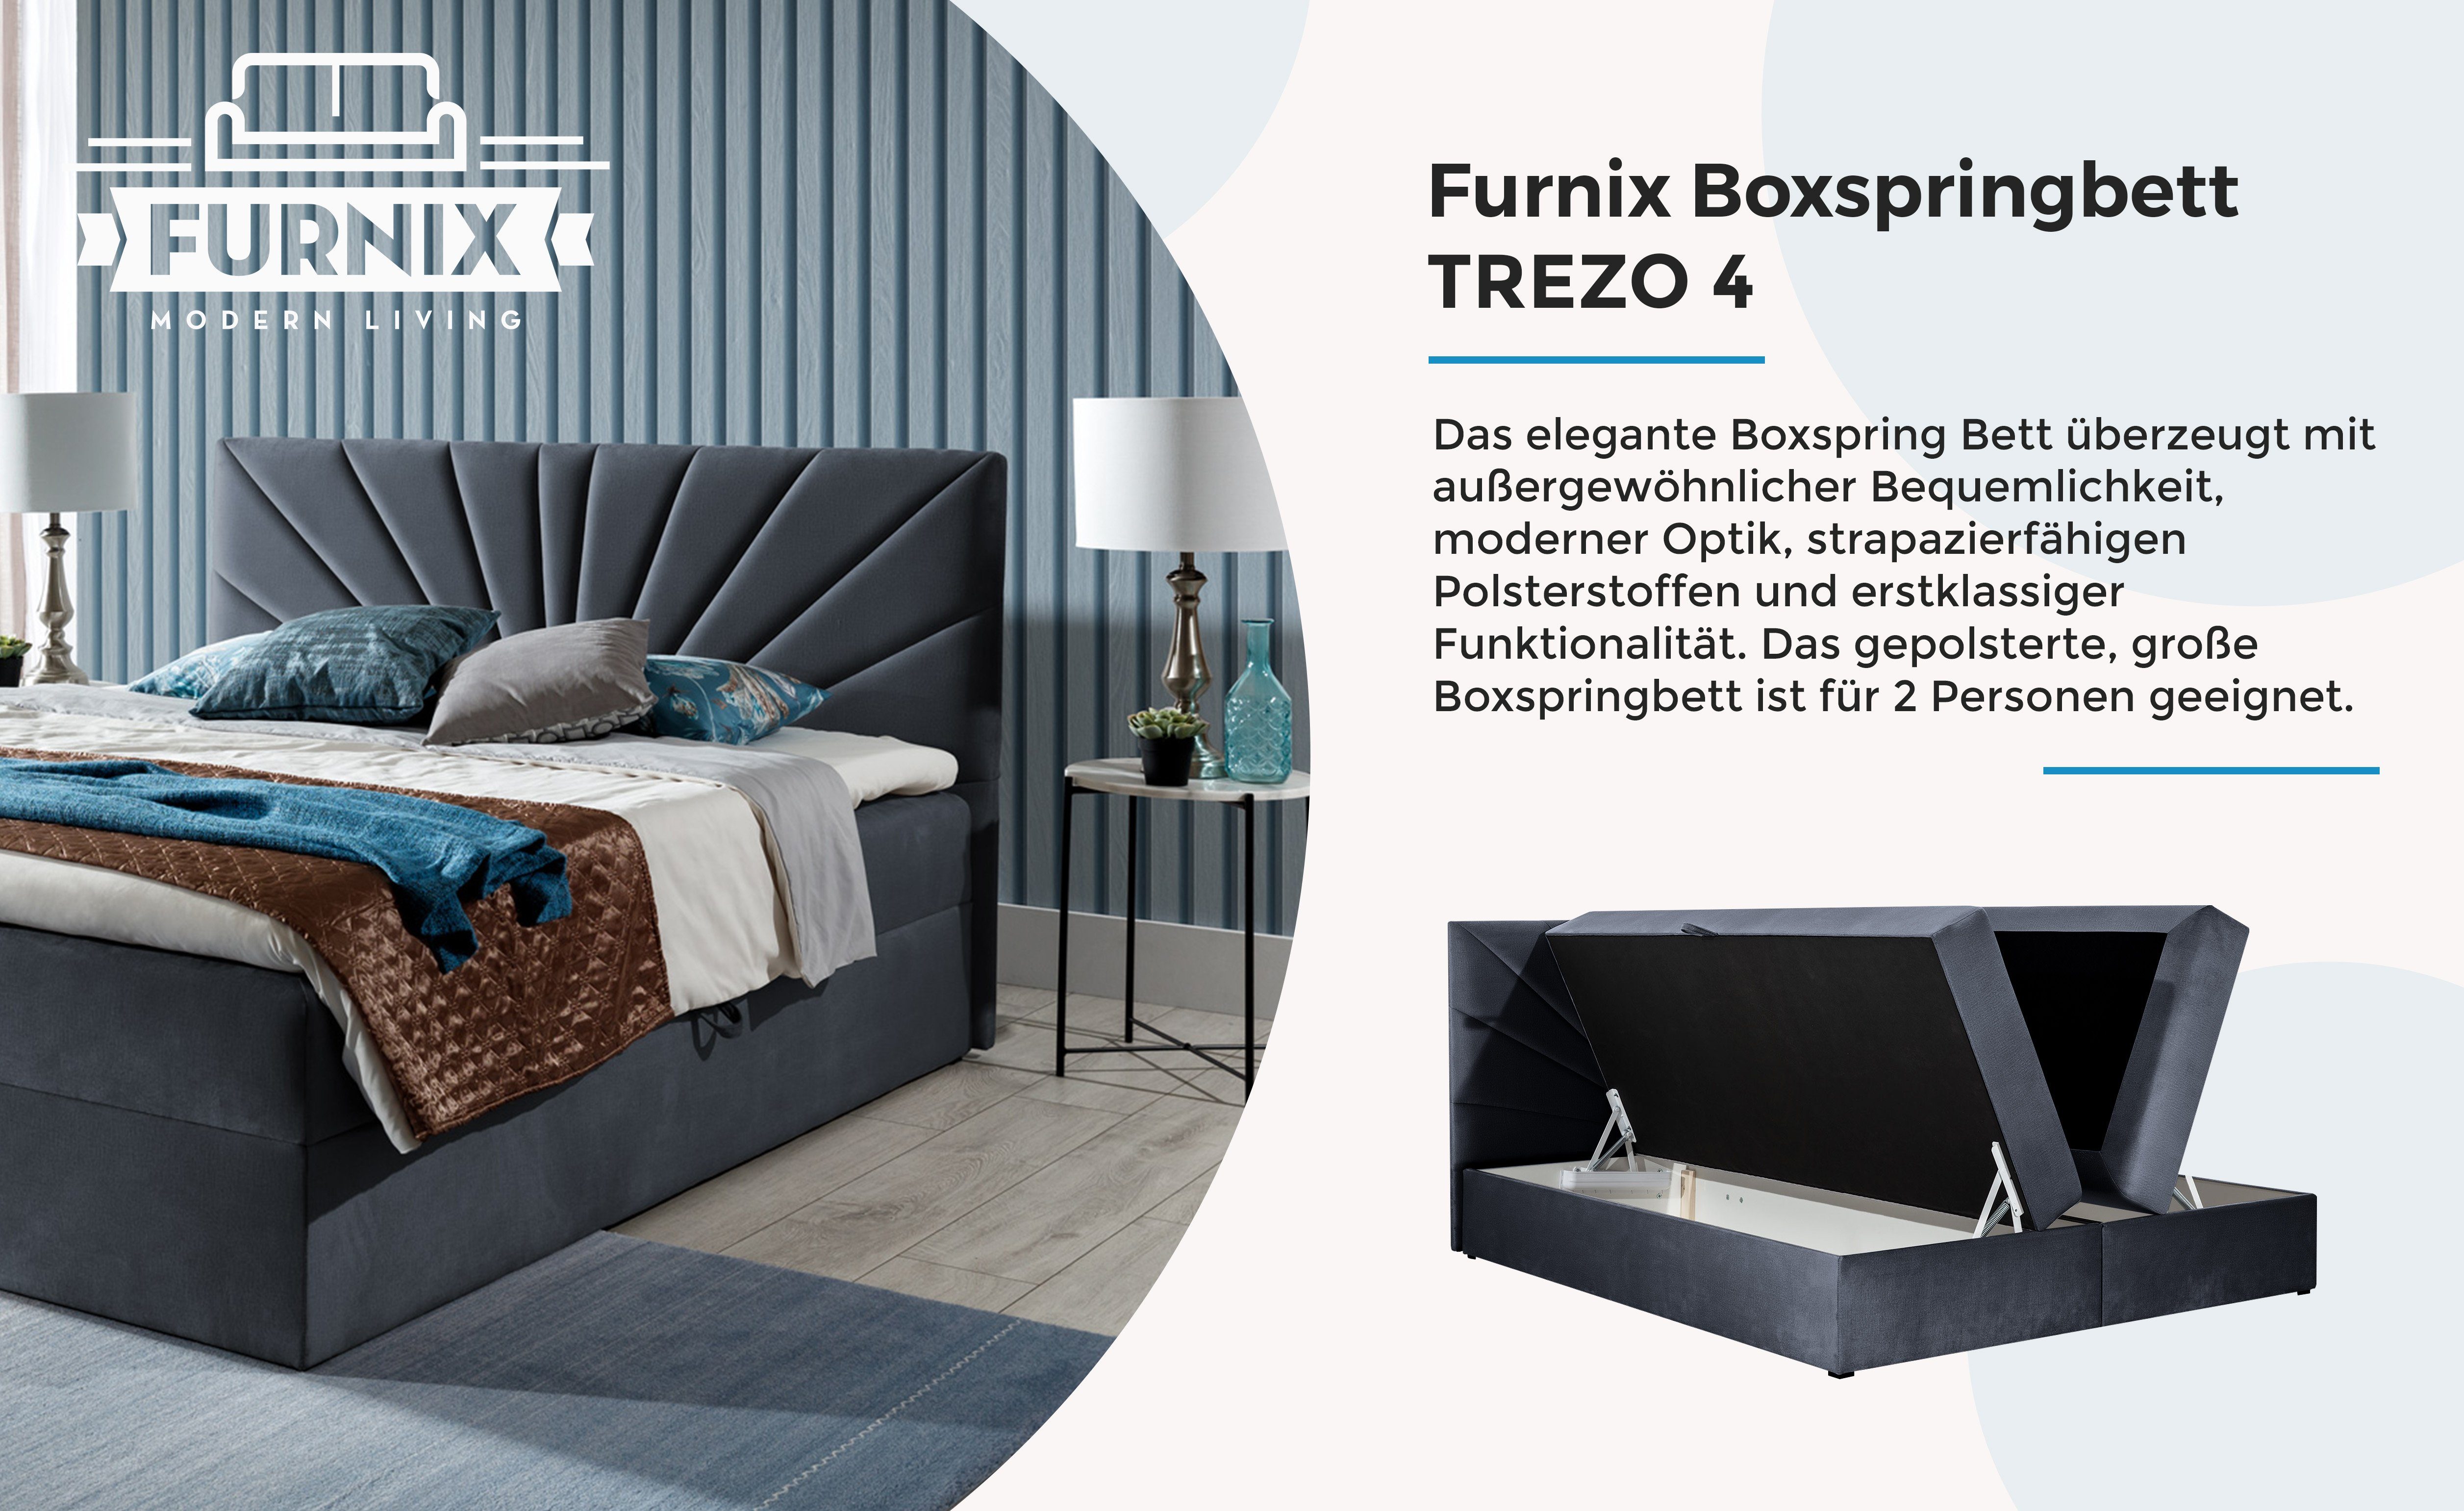 4 hochwertige Grau mit TREZO Furnix Boxspringbett Bettkasten Polsterstoffe cm tiefen 120/140/160/180/200x200 Topper, und